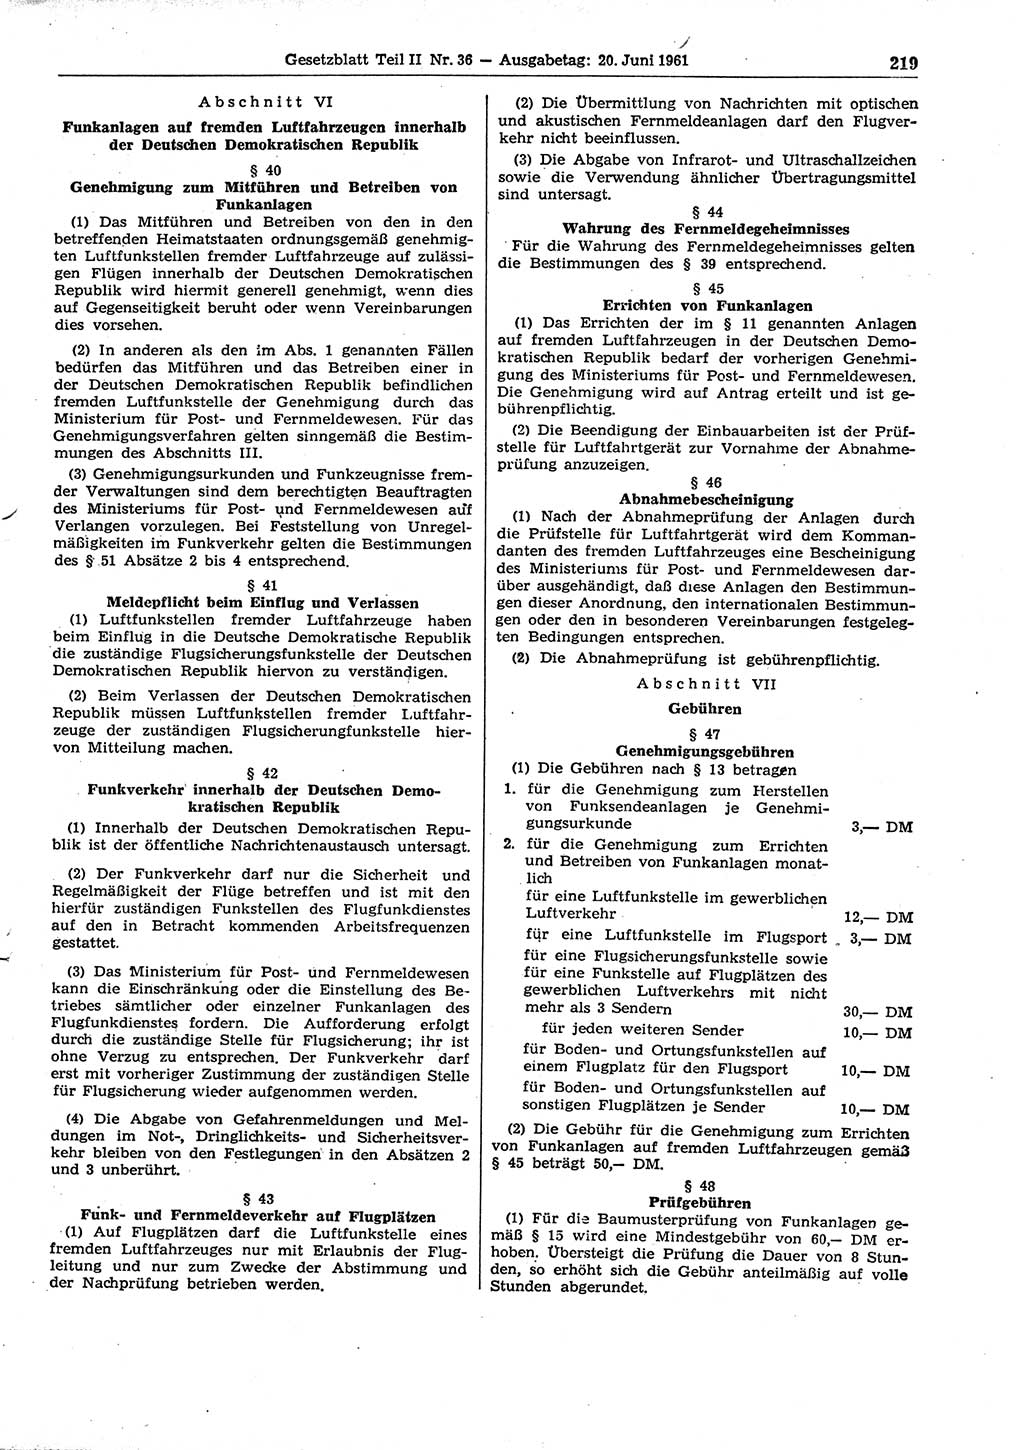 Gesetzblatt (GBl.) der Deutschen Demokratischen Republik (DDR) Teil ⅠⅠ 1961, Seite 219 (GBl. DDR ⅠⅠ 1961, S. 219)